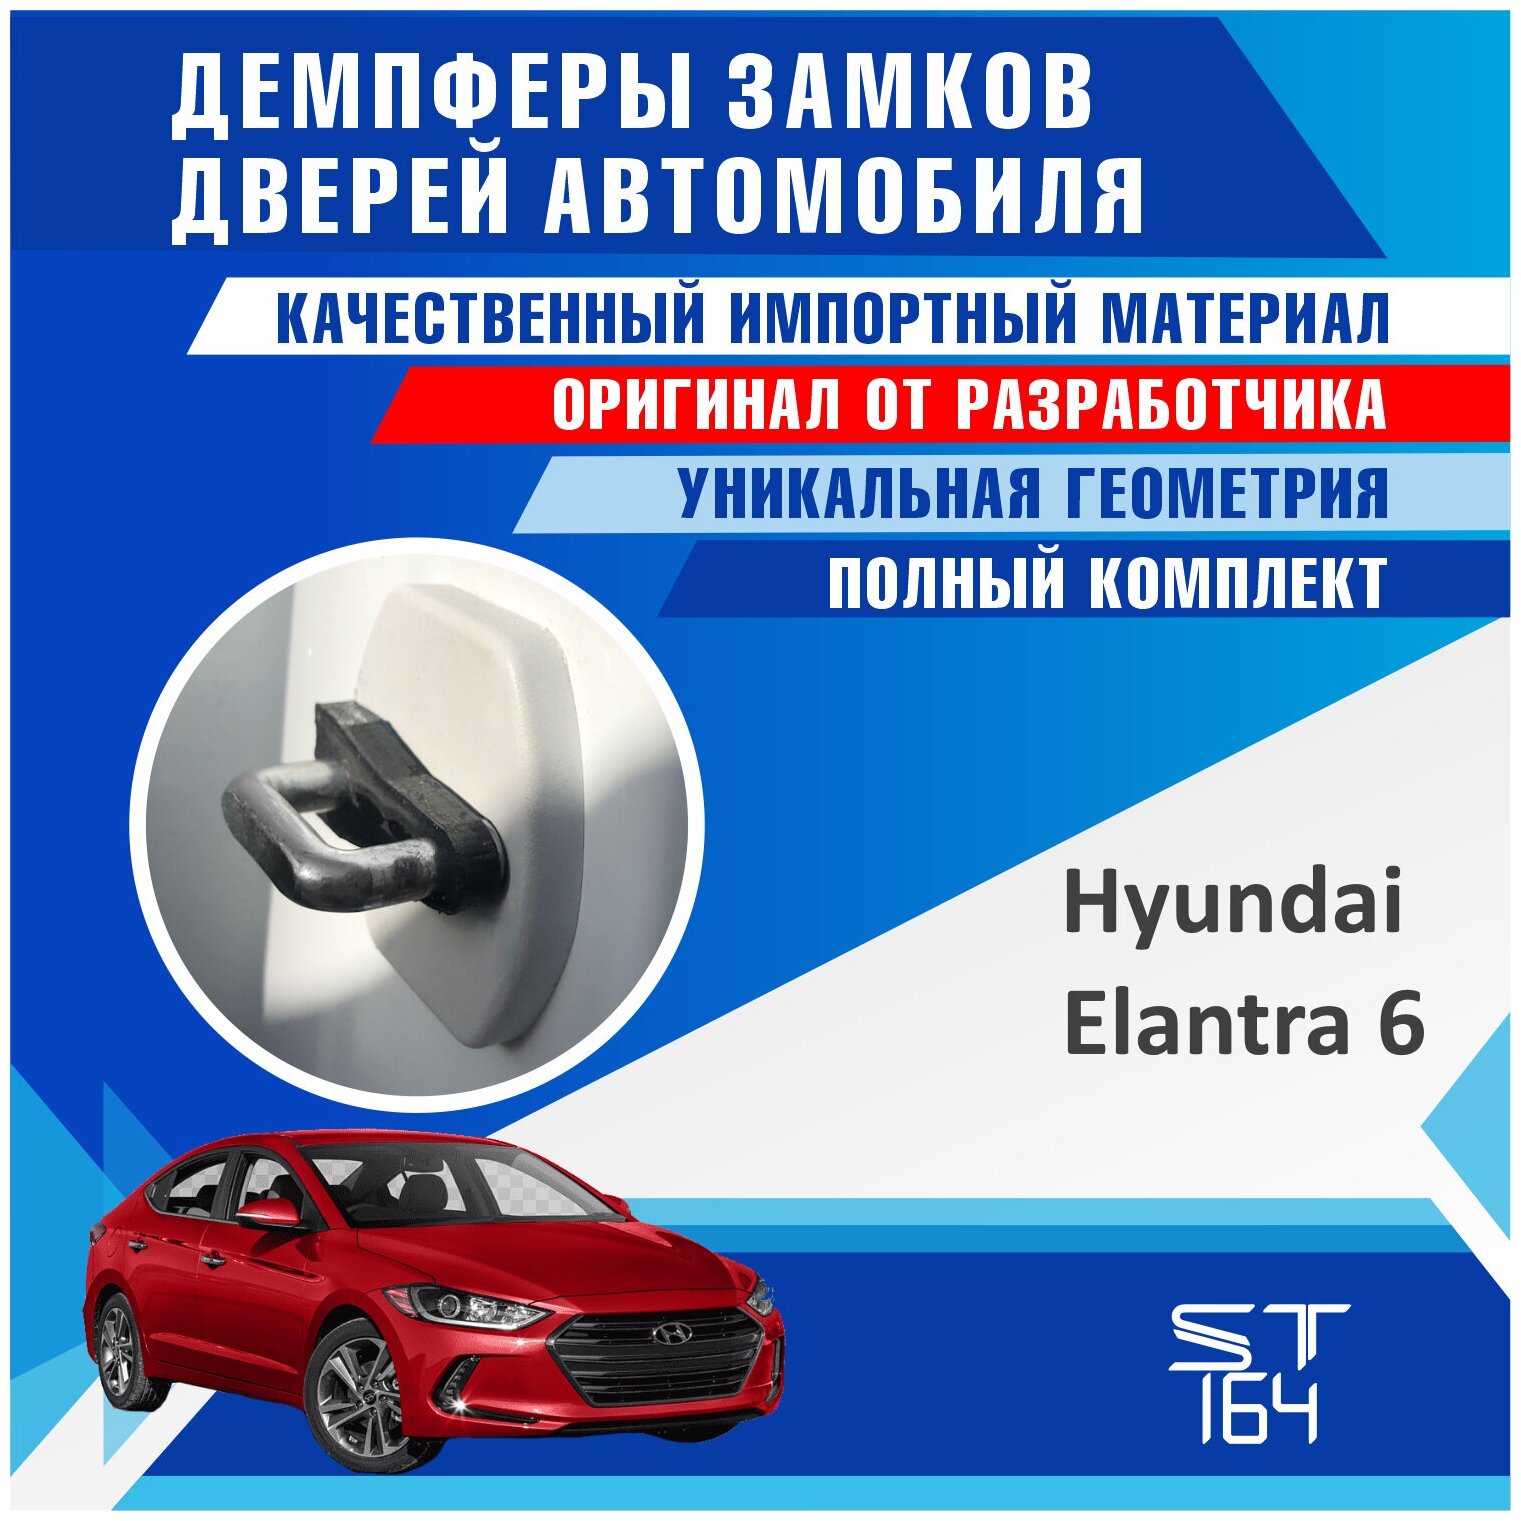 Демпферы замков дверей Хендай Элантра 6 поколение ( Hyundai Elantra 6 ), на 4 двери + смазка